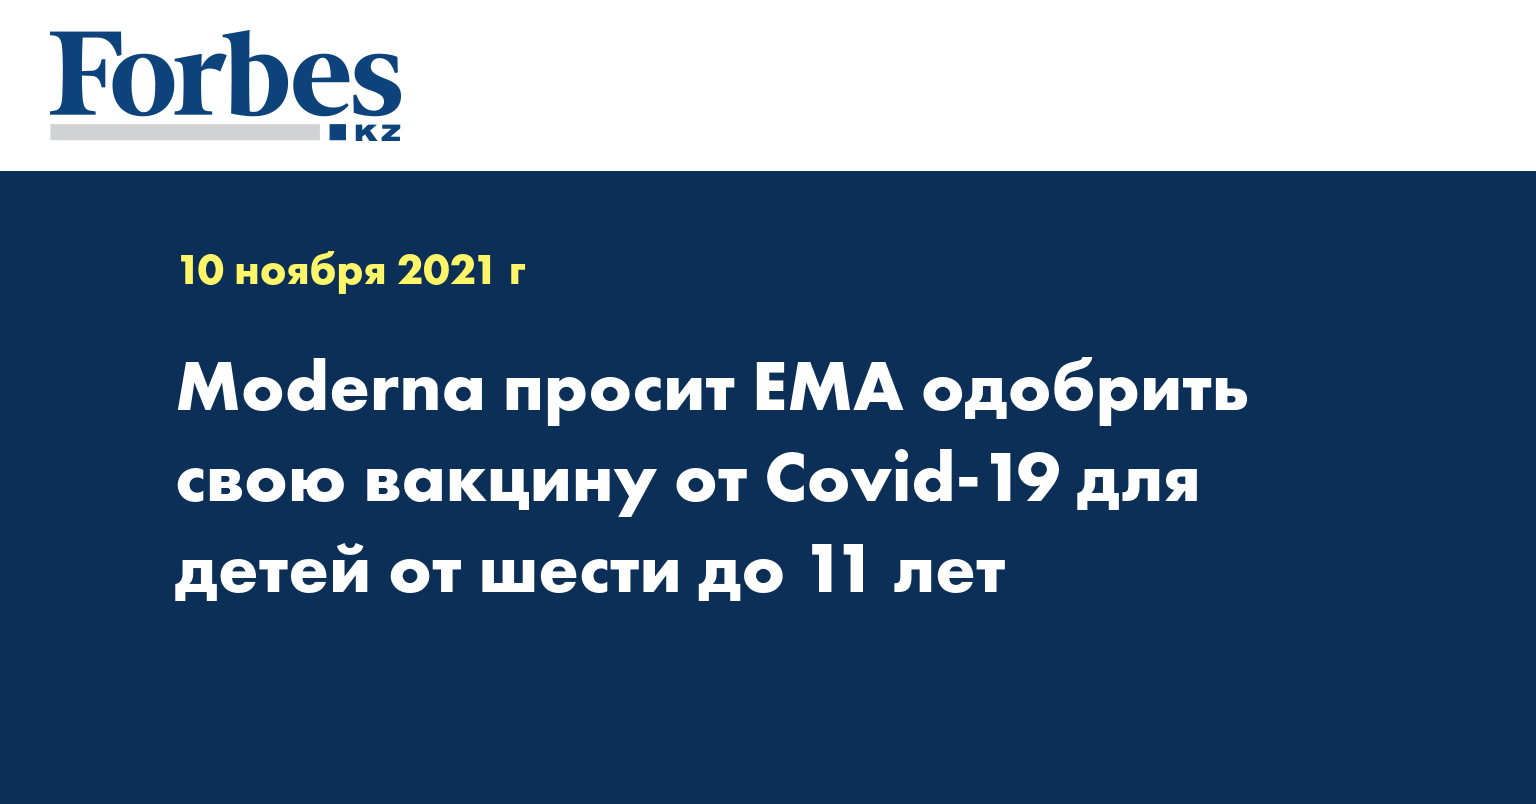 Moderna просит EMA одобрить свою вакцину от Covid-19 для детей от шести до 11 лет